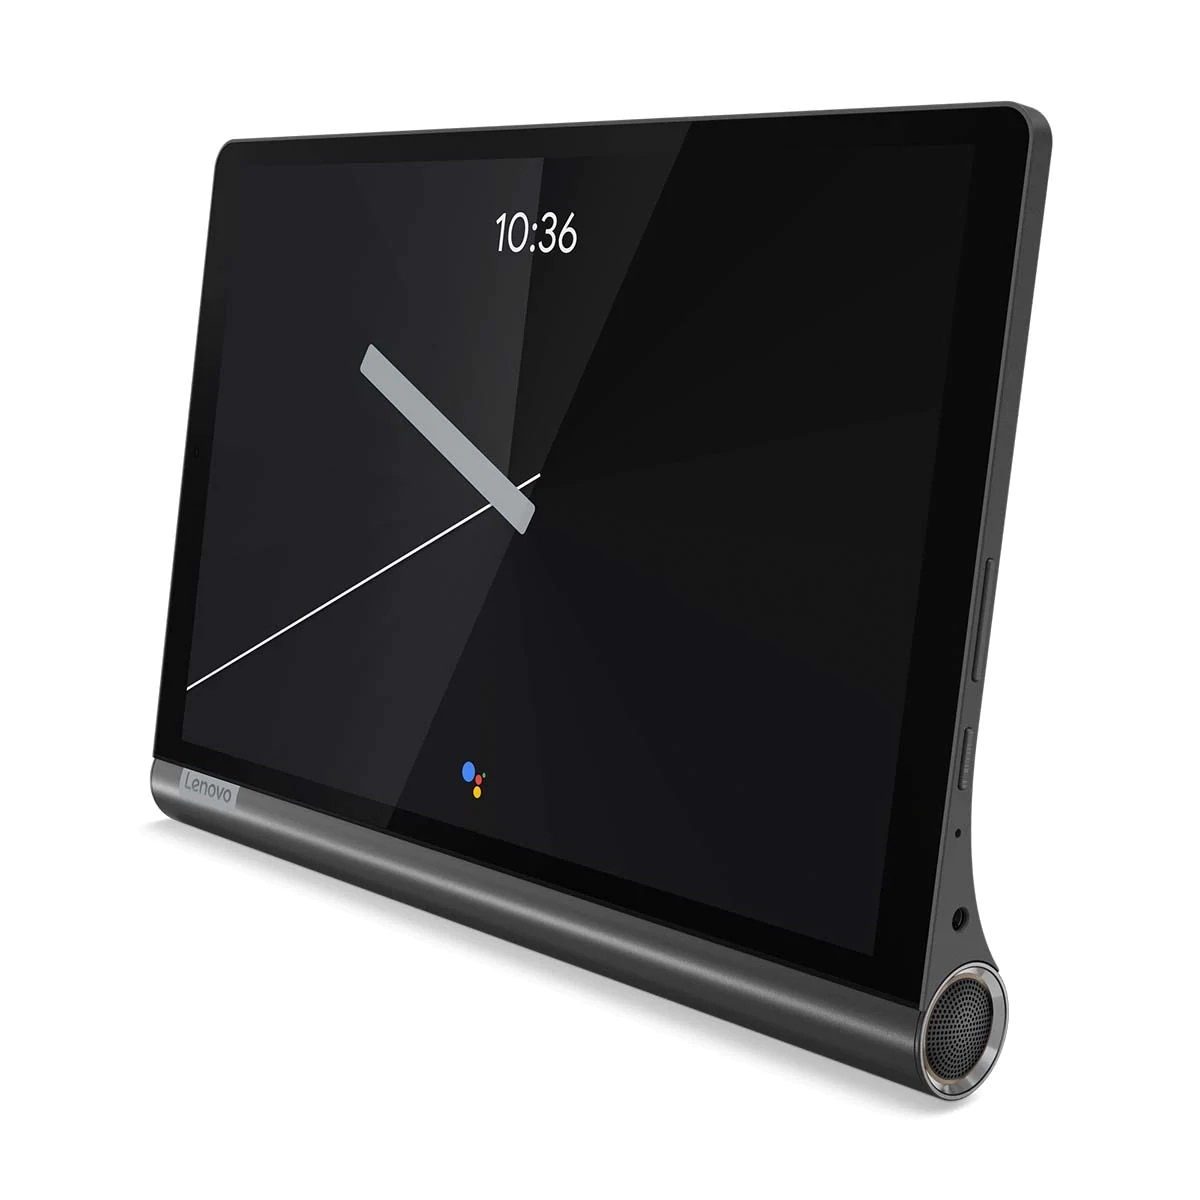 Lenovo Yoga Smart Tab │タブレットにもスマートホームハブにもなる